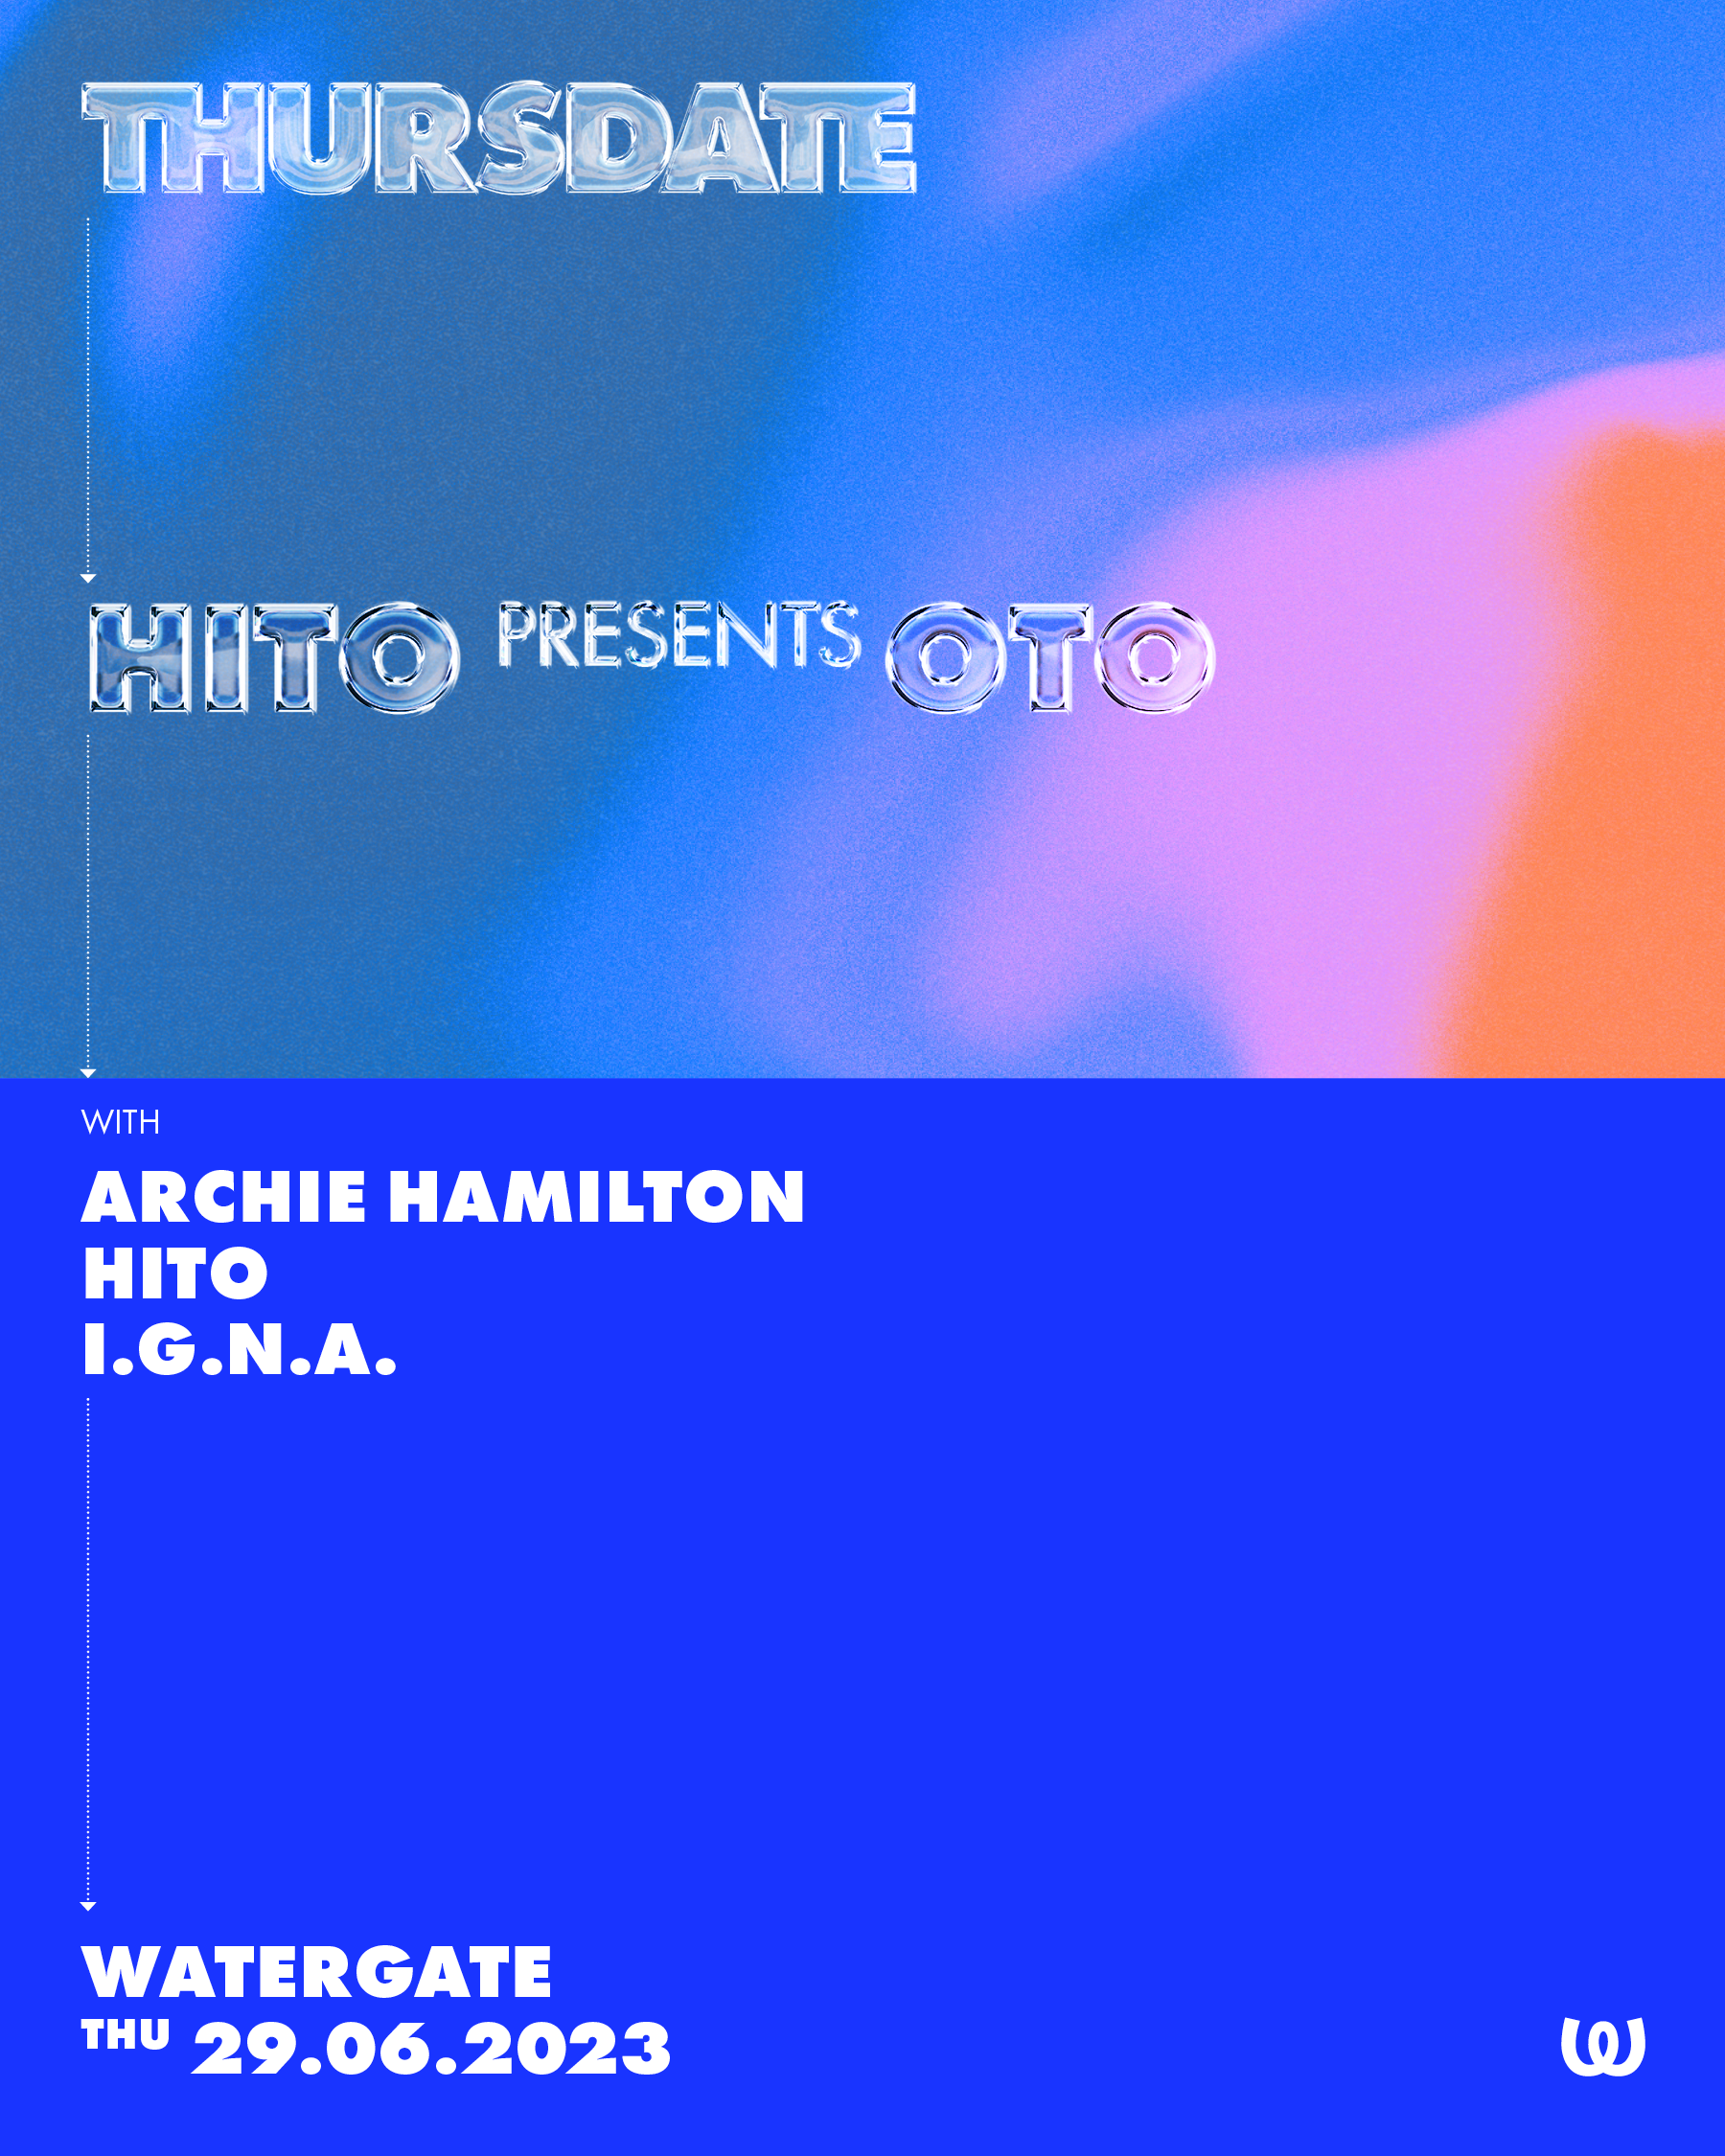 Thursdate: Hito pres. OTO with Archie Hamilton, Hito, I.G.N.A - フライヤー裏